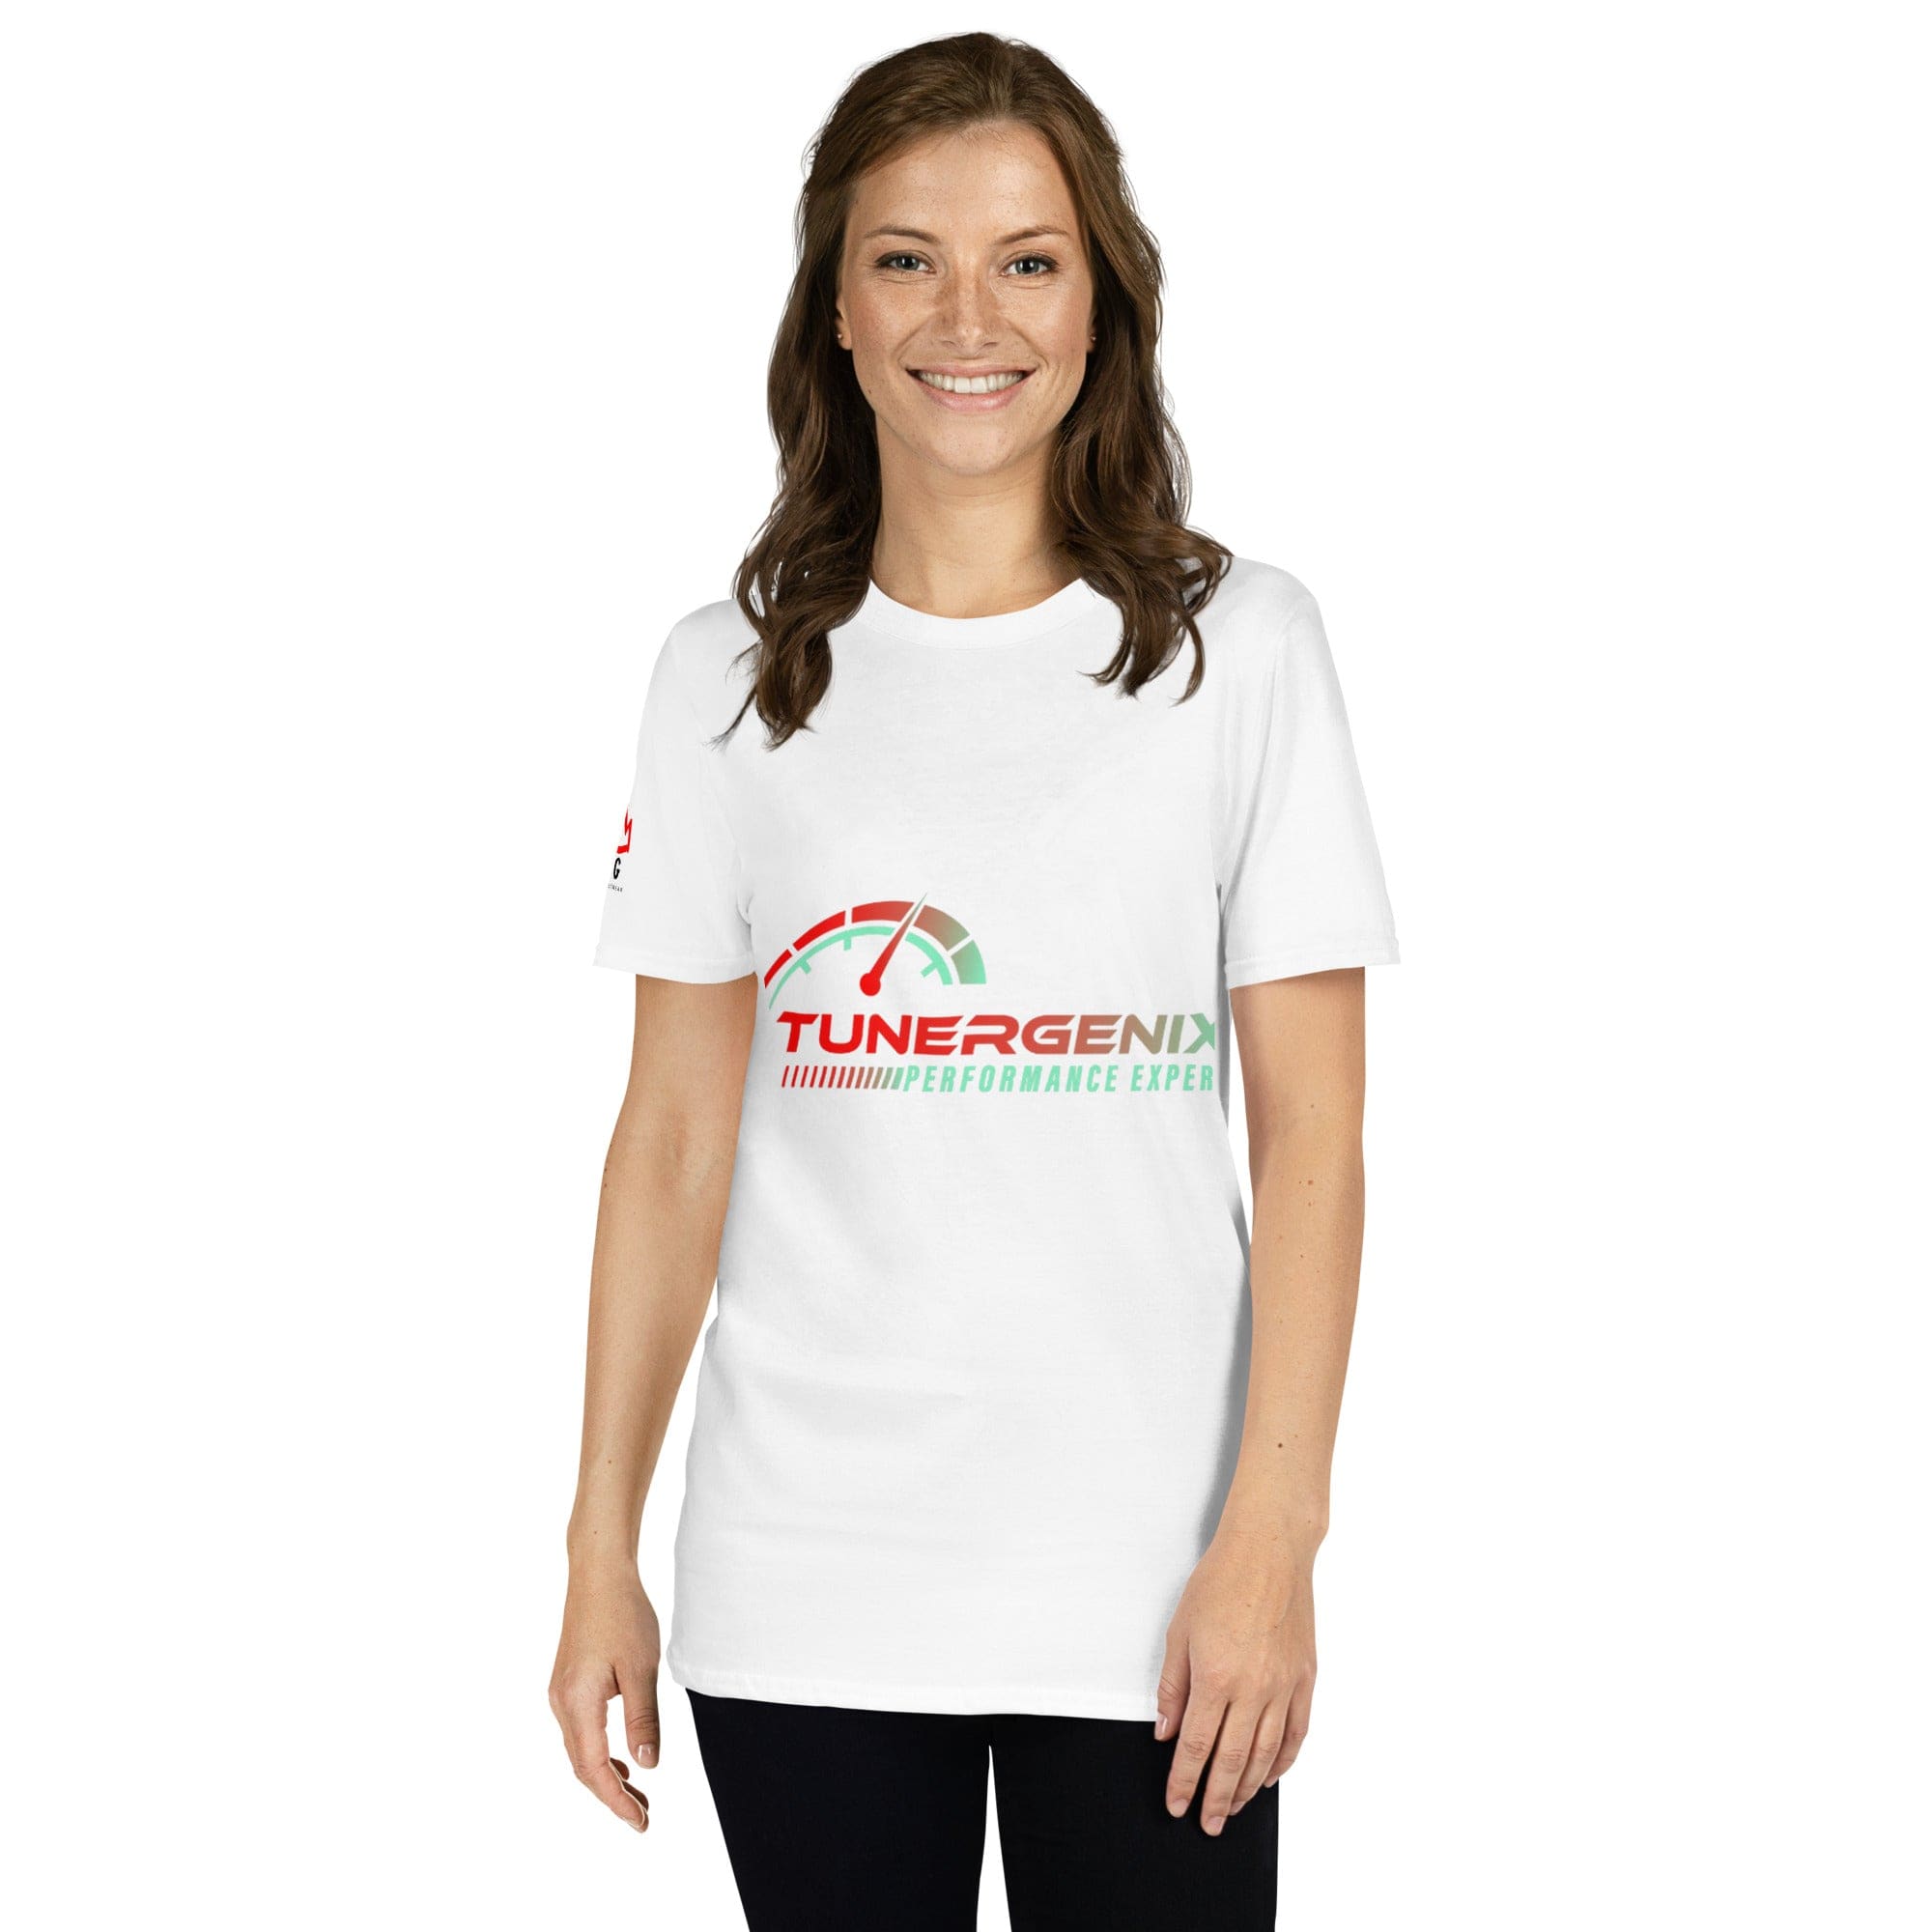 TunerGenix Apparel/Misc S TunerGenix White Short-Sleeve Unisex T-Shirt